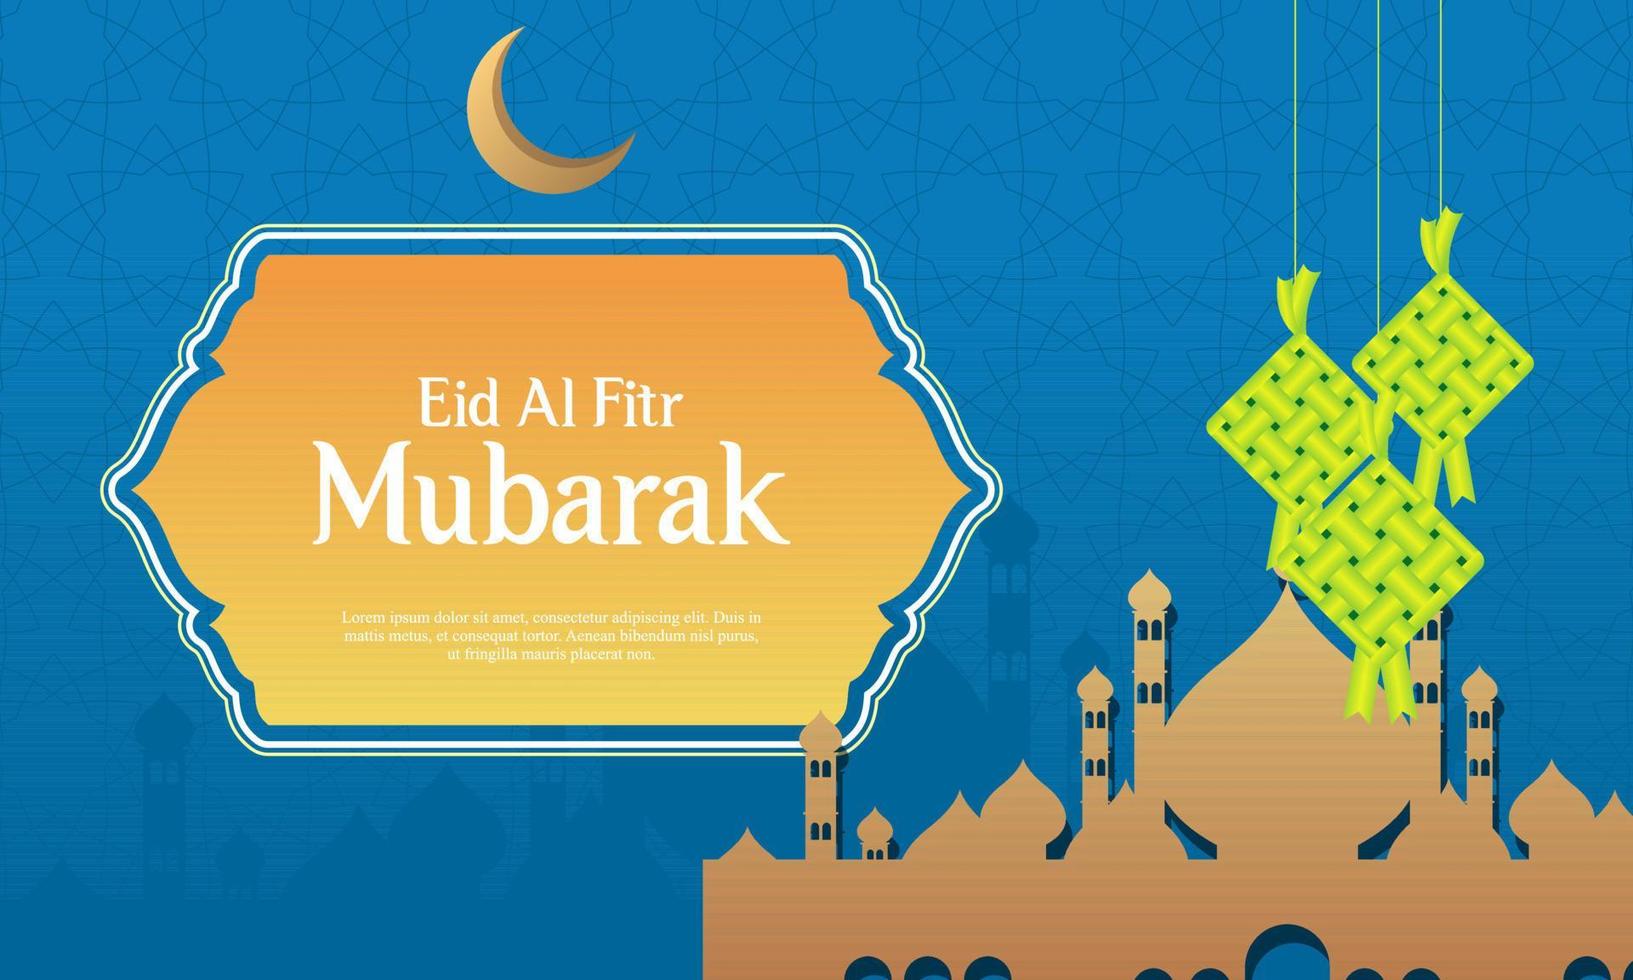 modèle de conception graphique illustration réaliste eid al-fitr ramadan vecteur